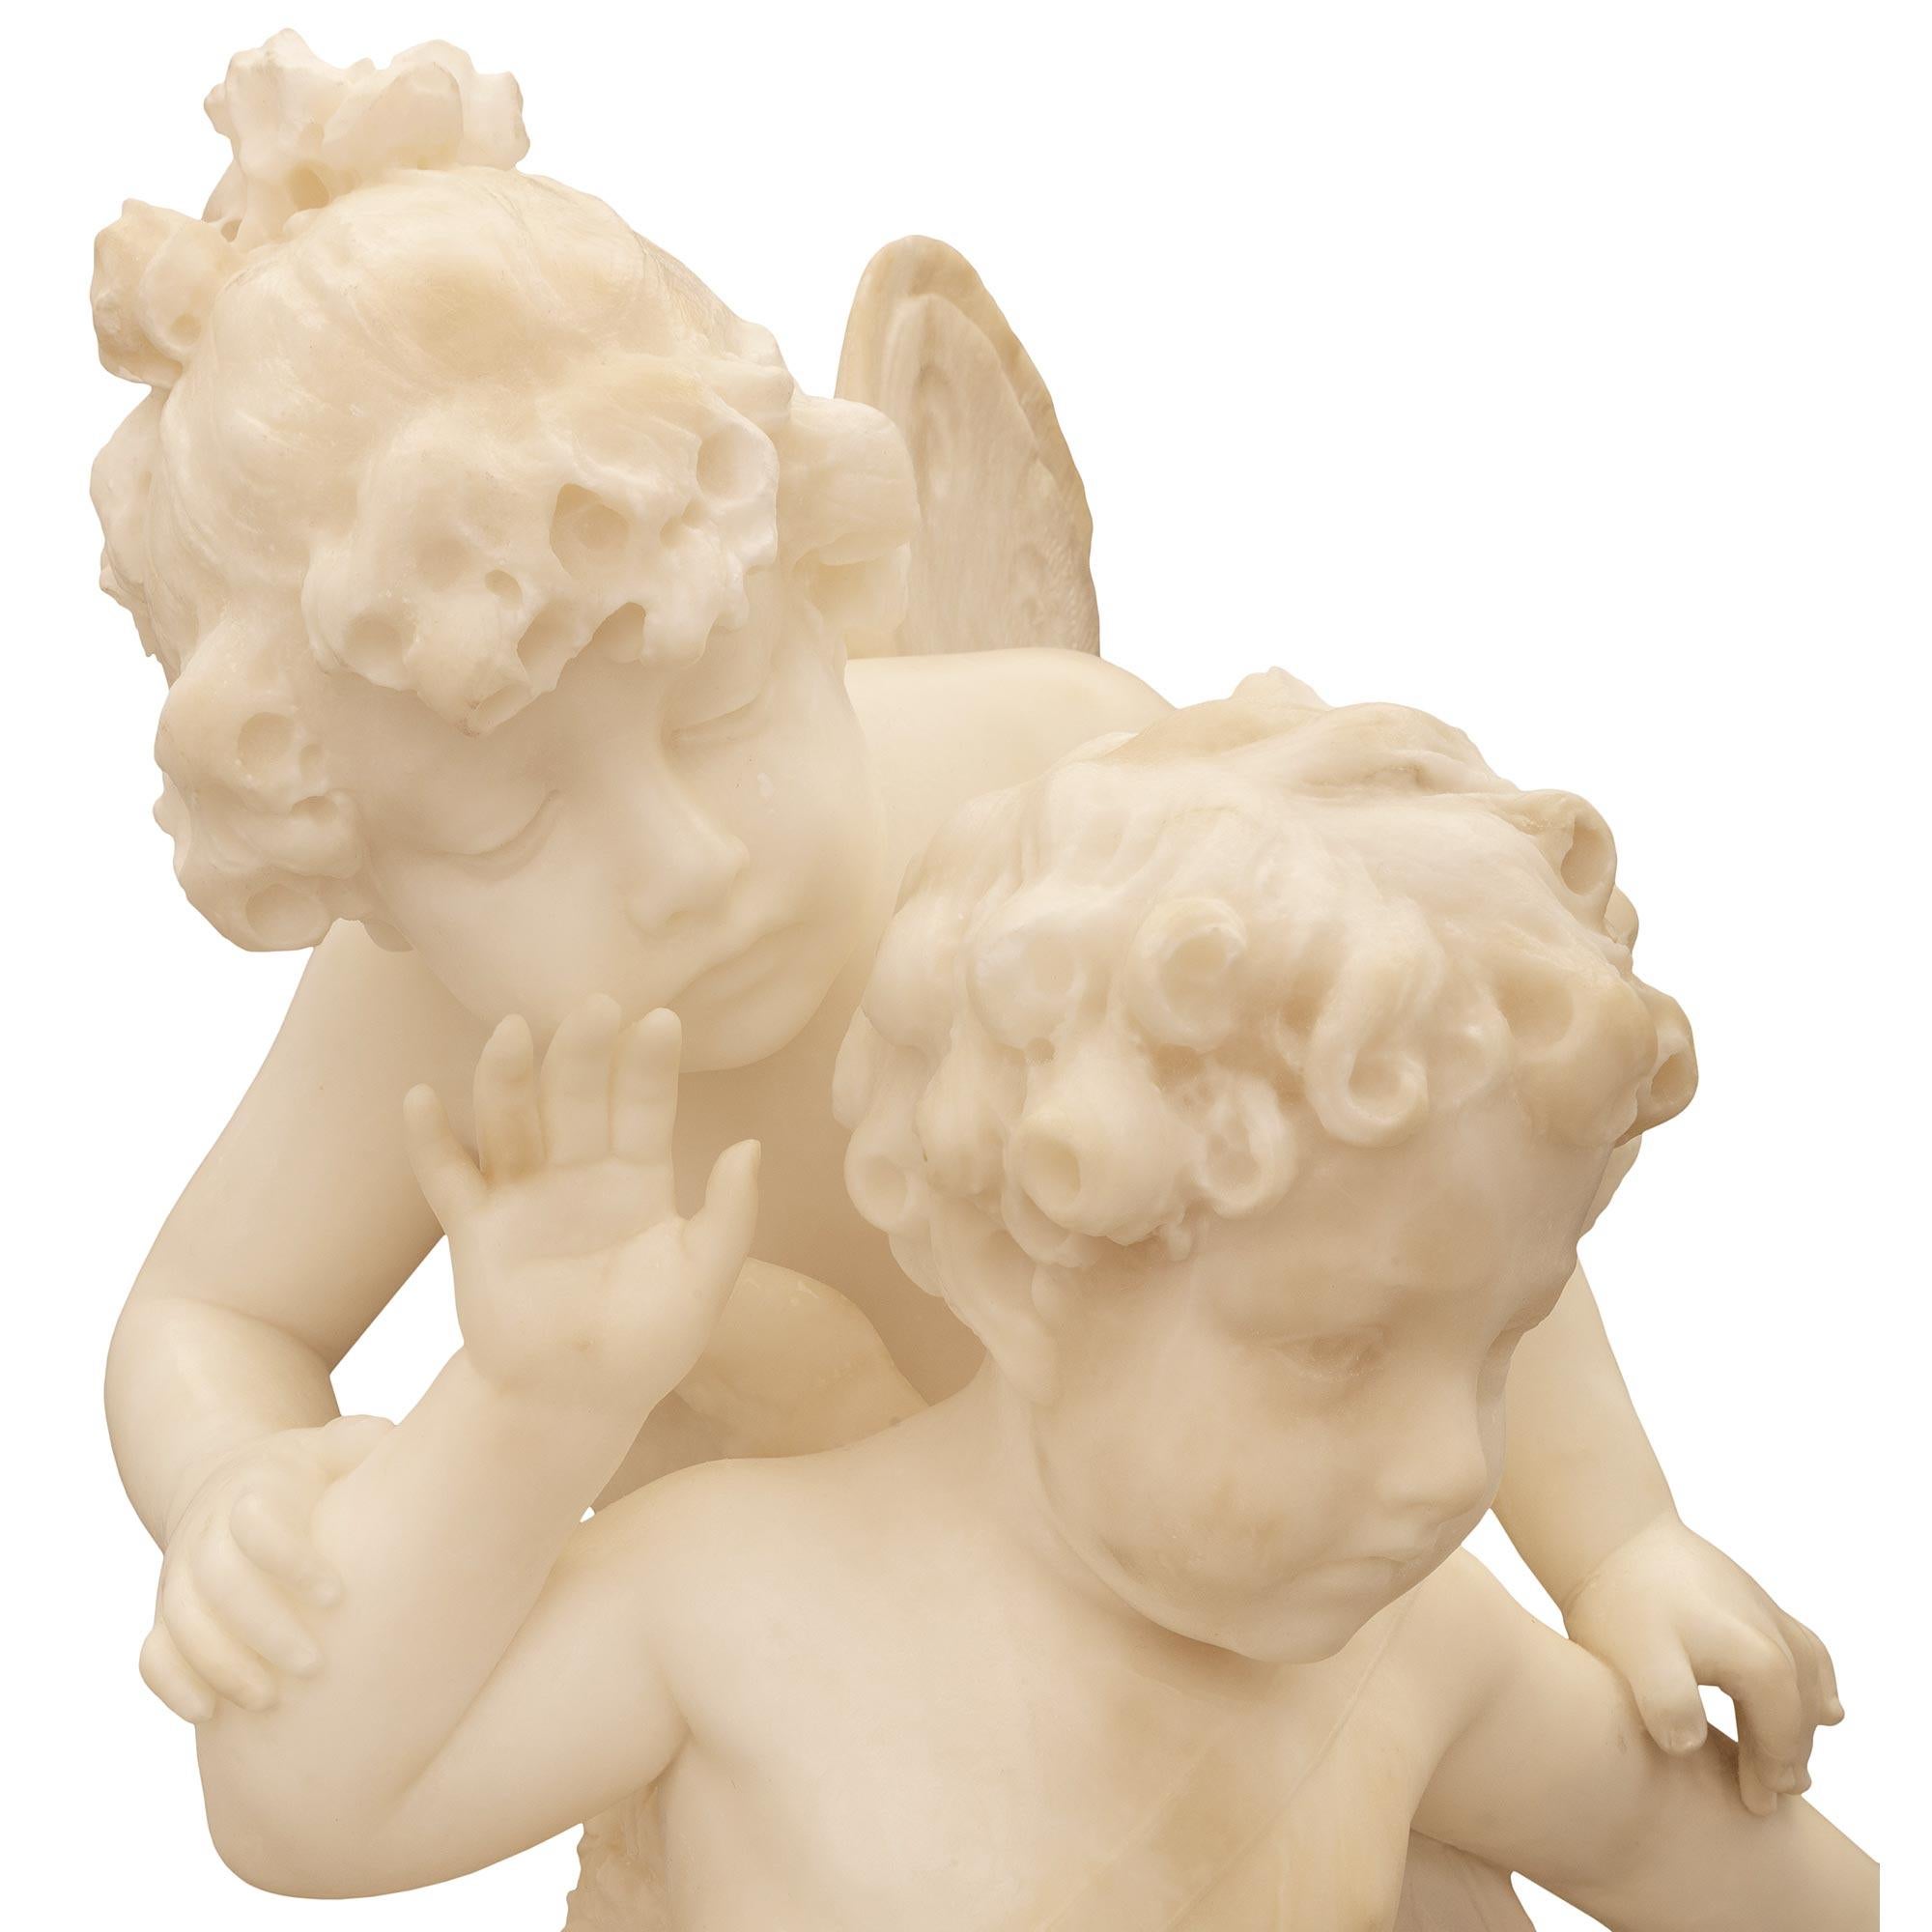 Italian 19th Century White Carrara Marble Statue Titled “Amore Sdegnato” For Sale 3